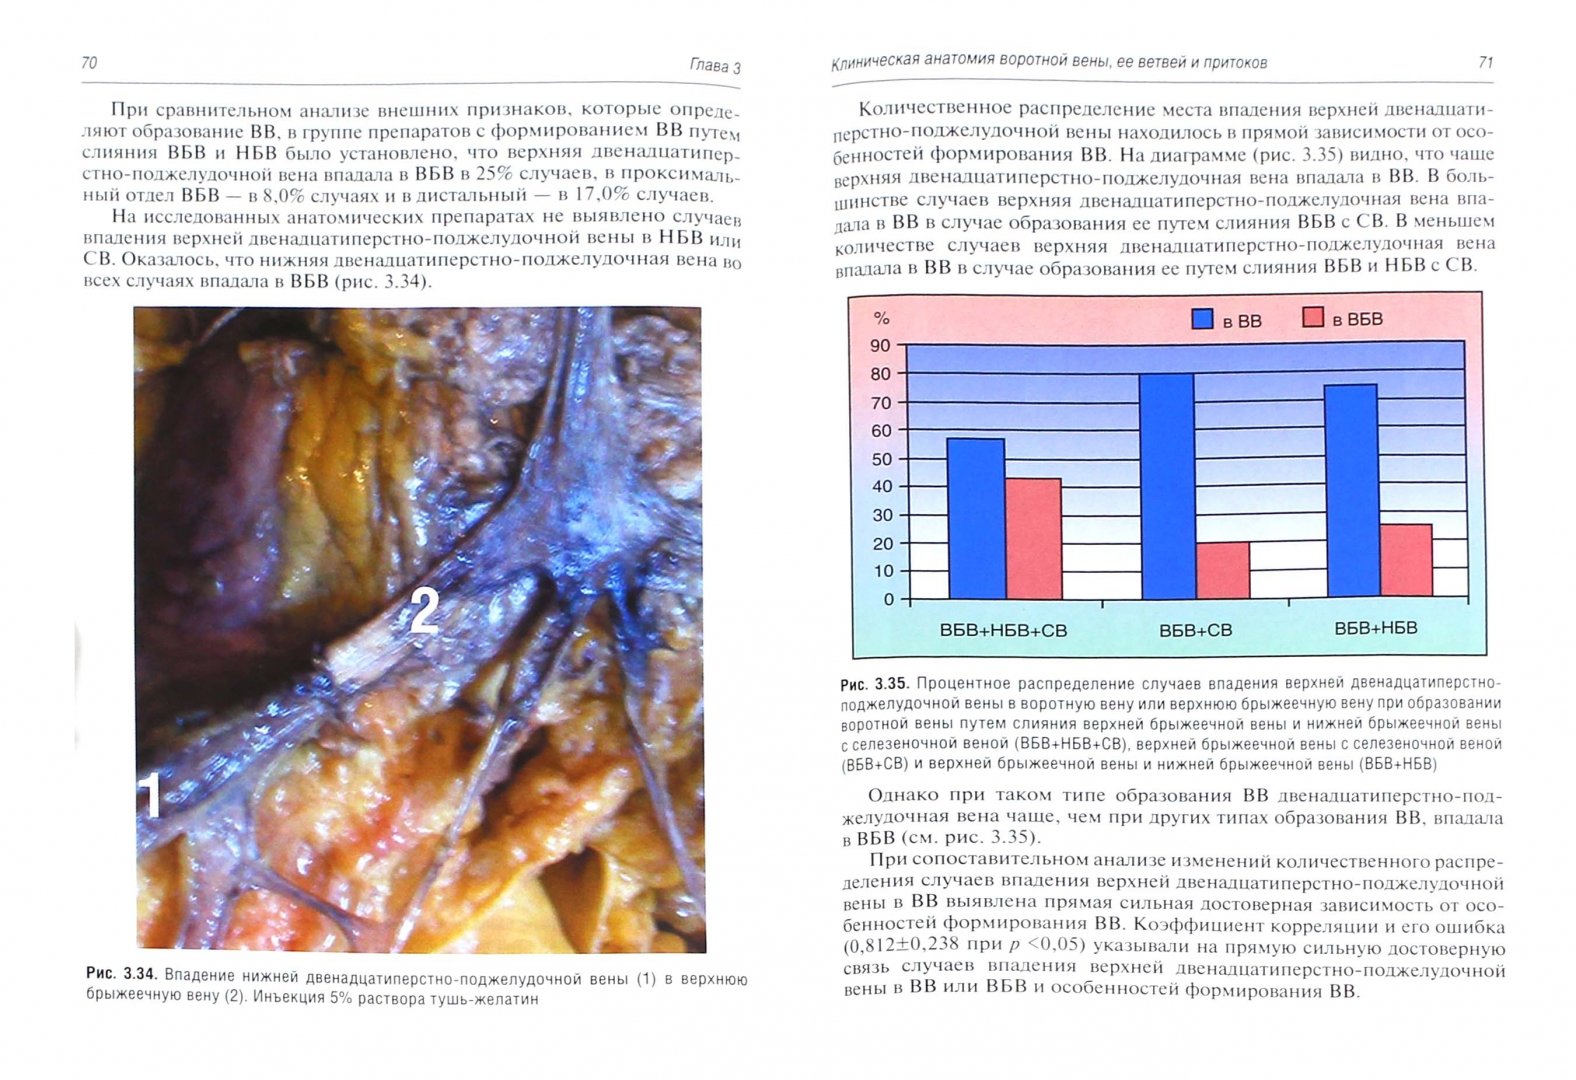 Иллюстрация 1 из 4 для Клиническая анатомия системы воротной вены печени - Калинин, Виноградов, Андреева | Лабиринт - книги. Источник: Лабиринт